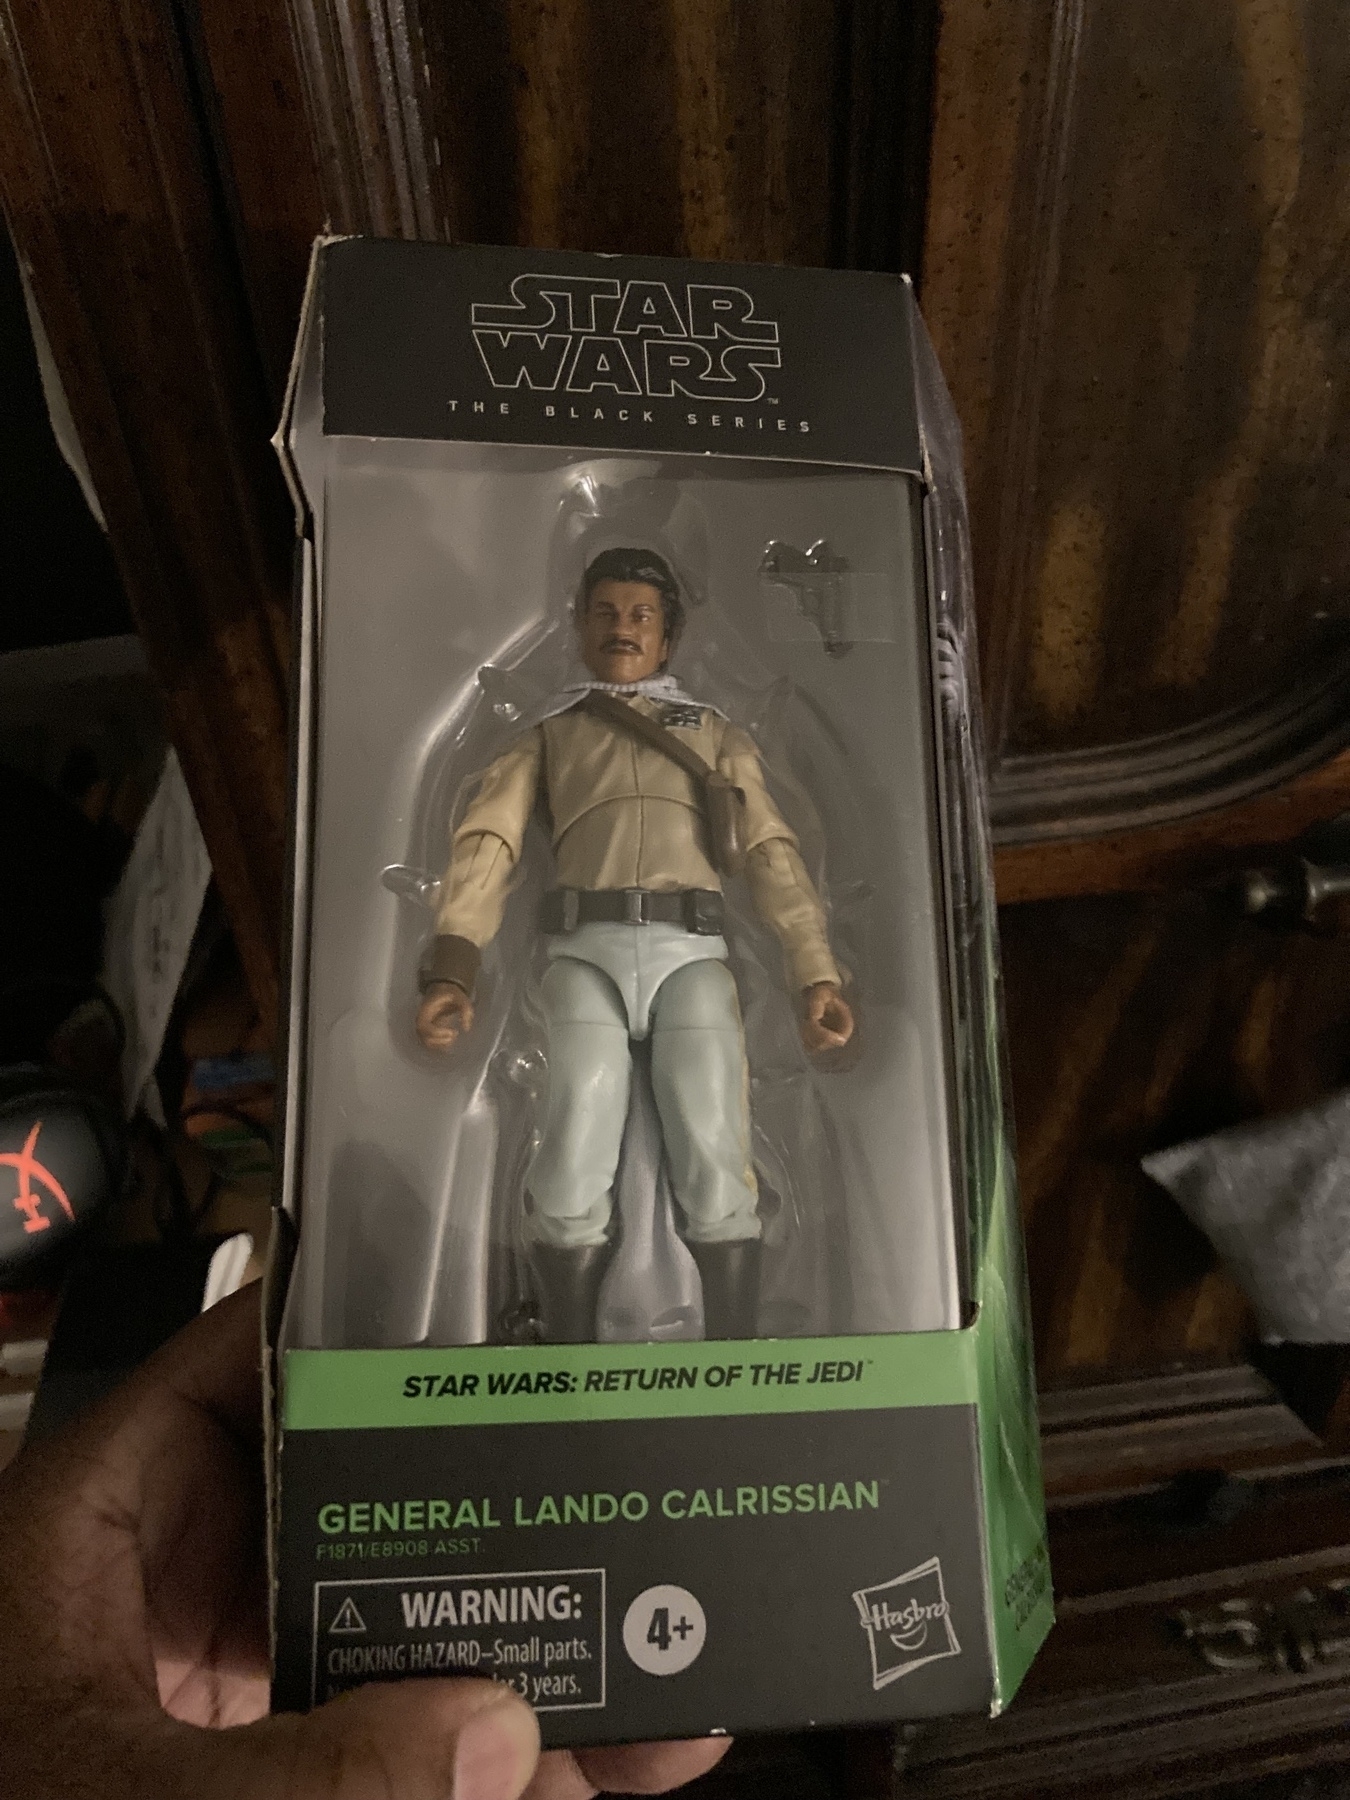 Lando Calrissian toy still in the box. 